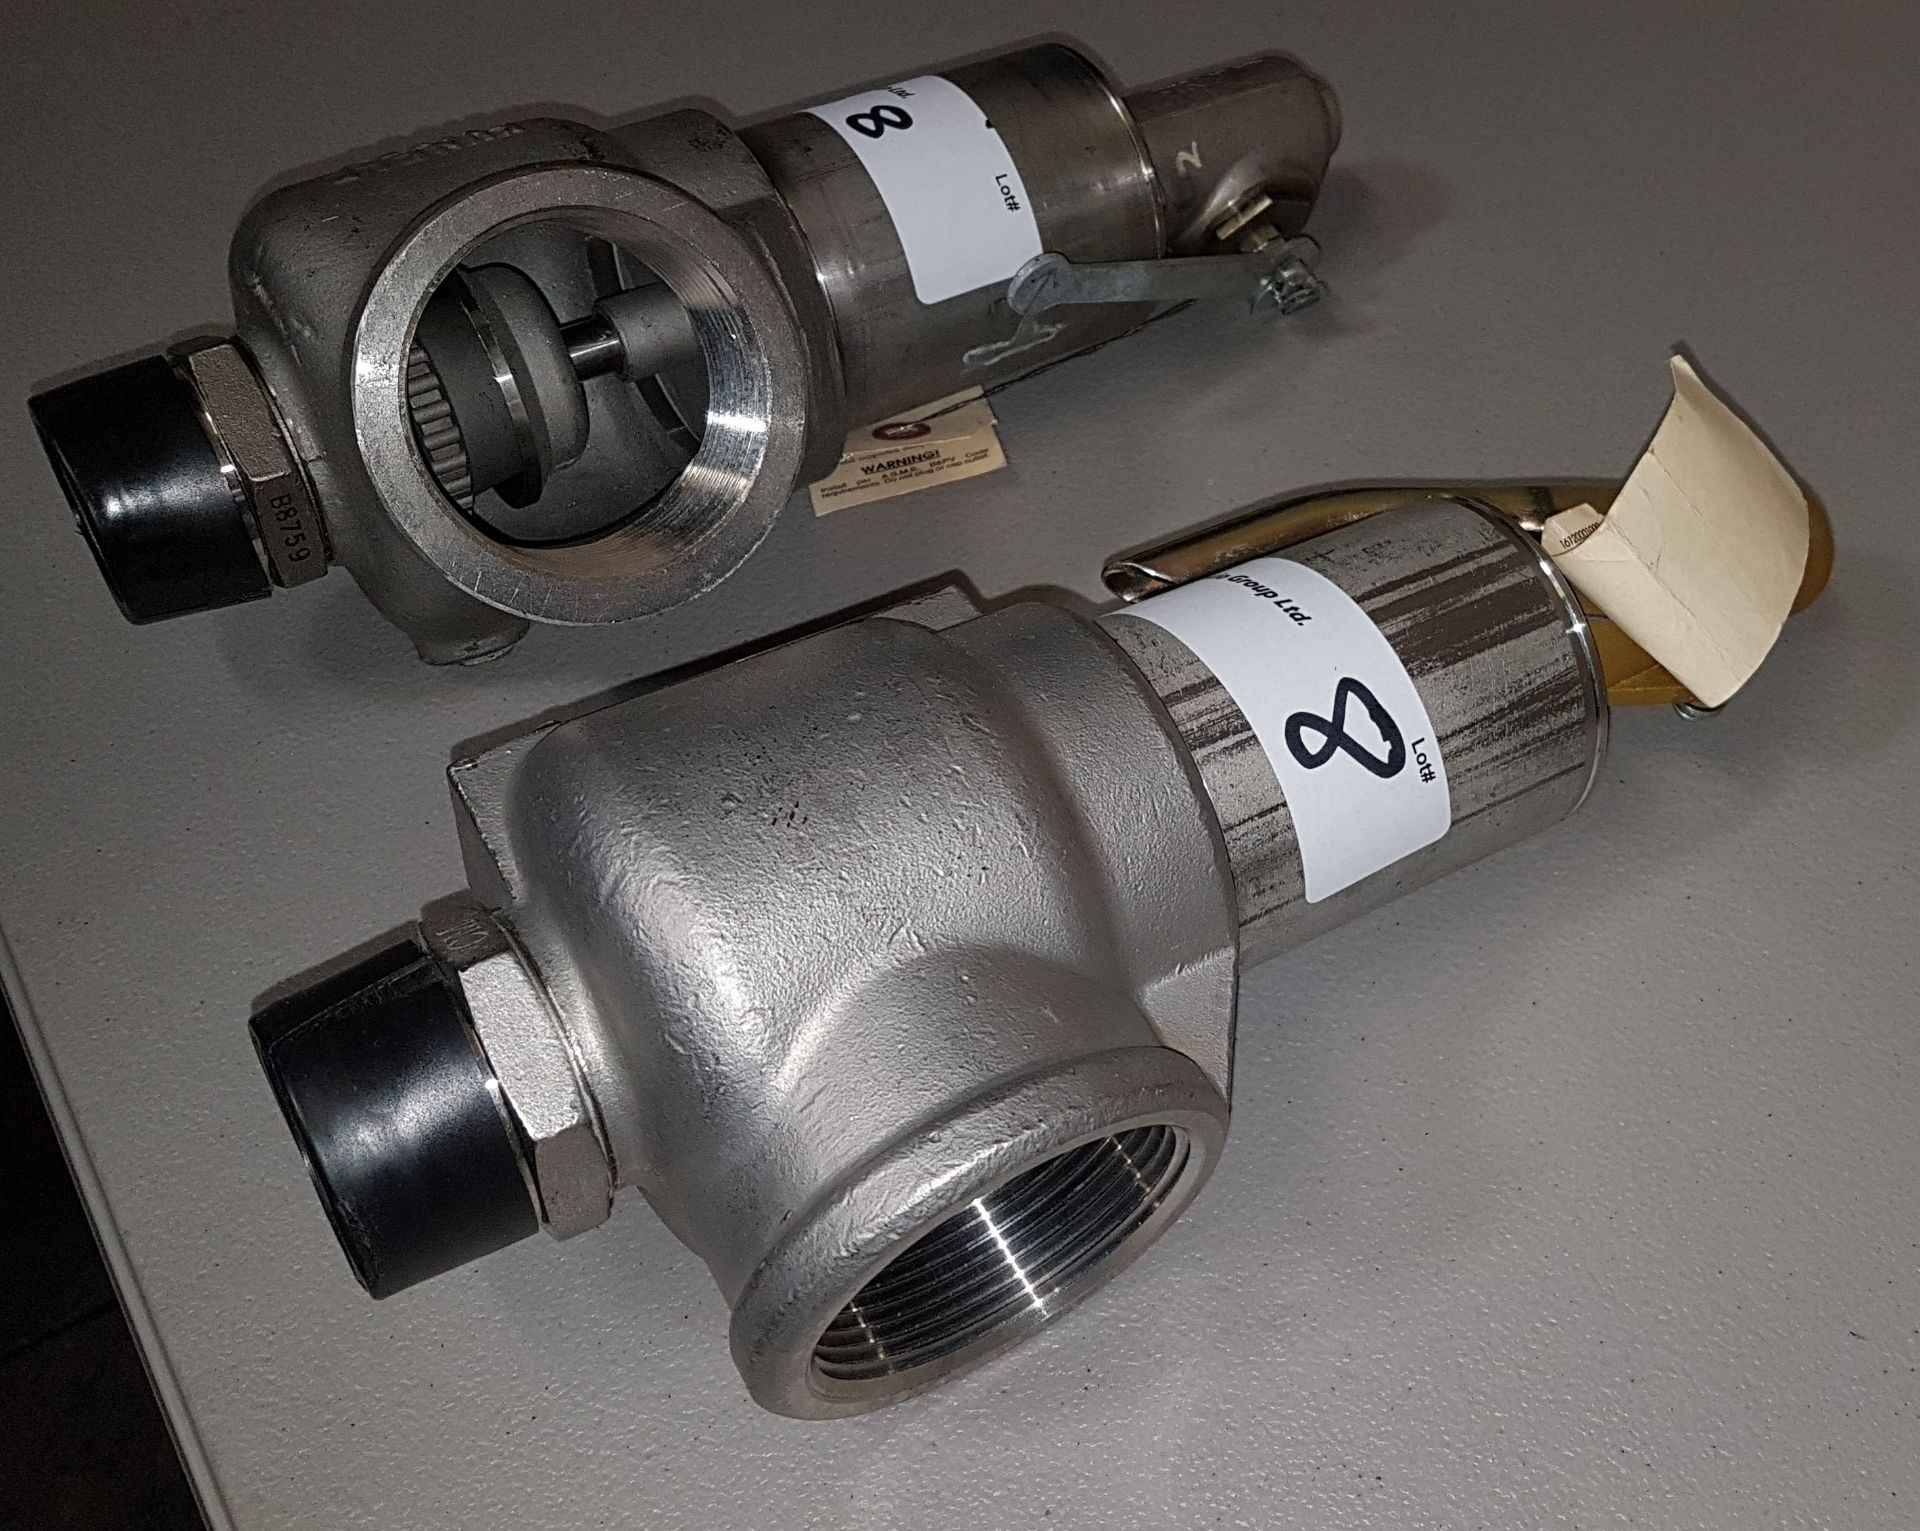 Lot of (2) Kunkle Valve pressure release valves, set for 30 psig. - Image 8 of 8